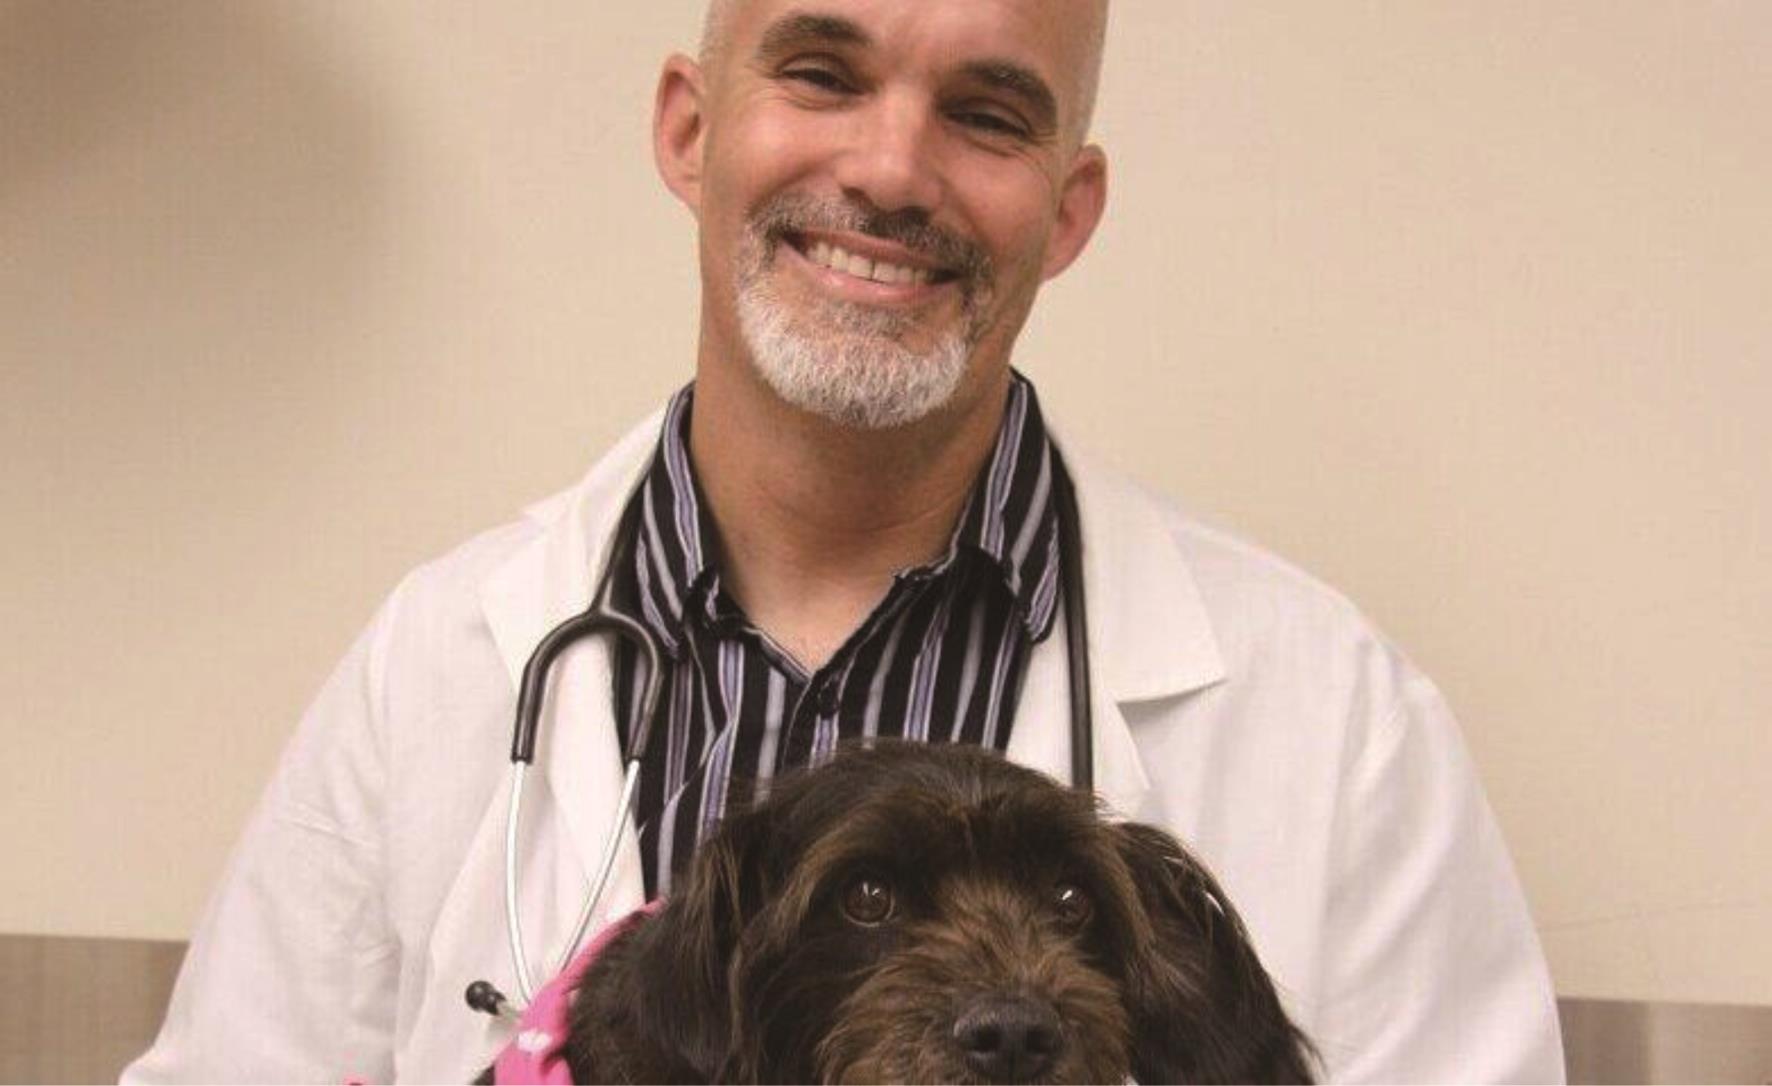  用犬自身肿瘤制成的疫苗成功治疗犬骨癌。 